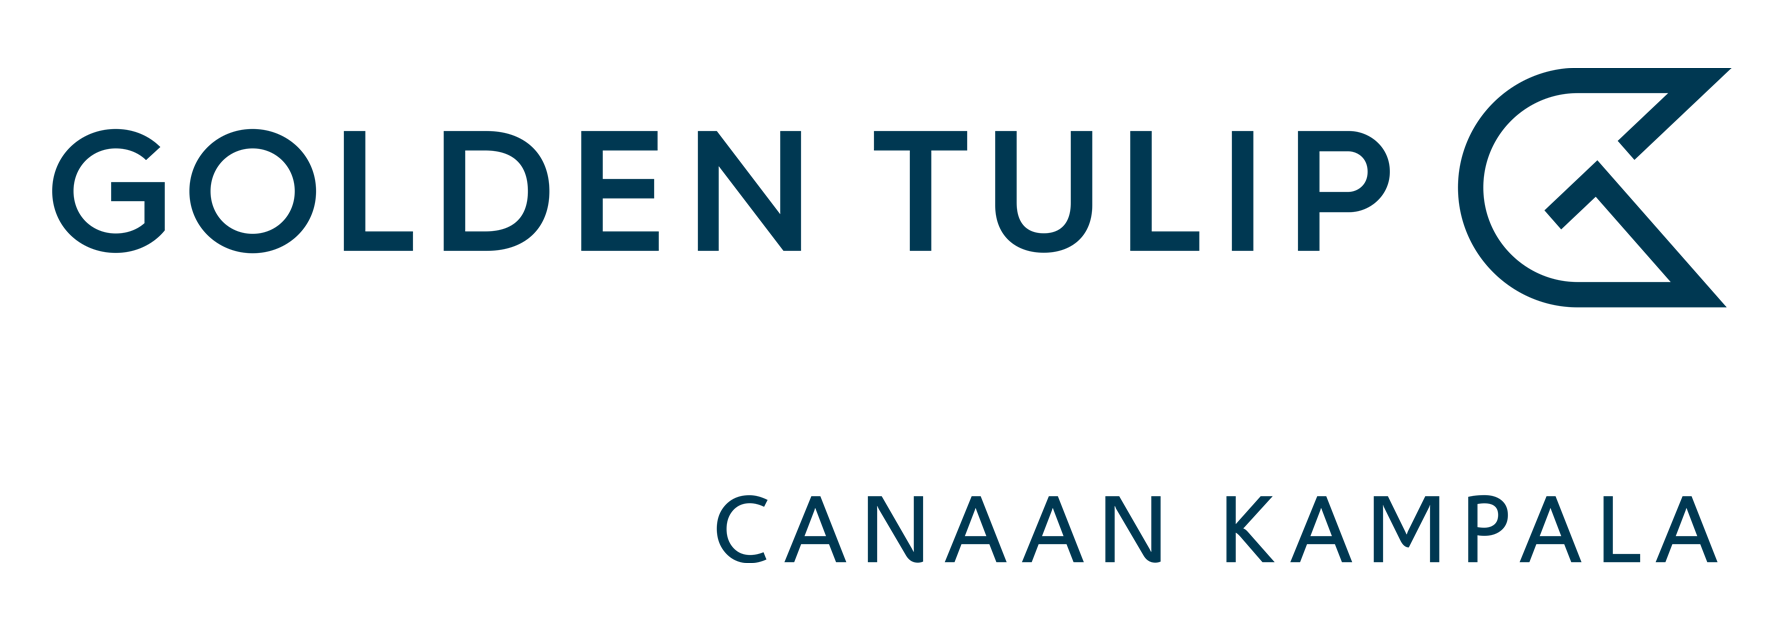 Golden Tulip Canaan Kampala Hotel - Canaan Group